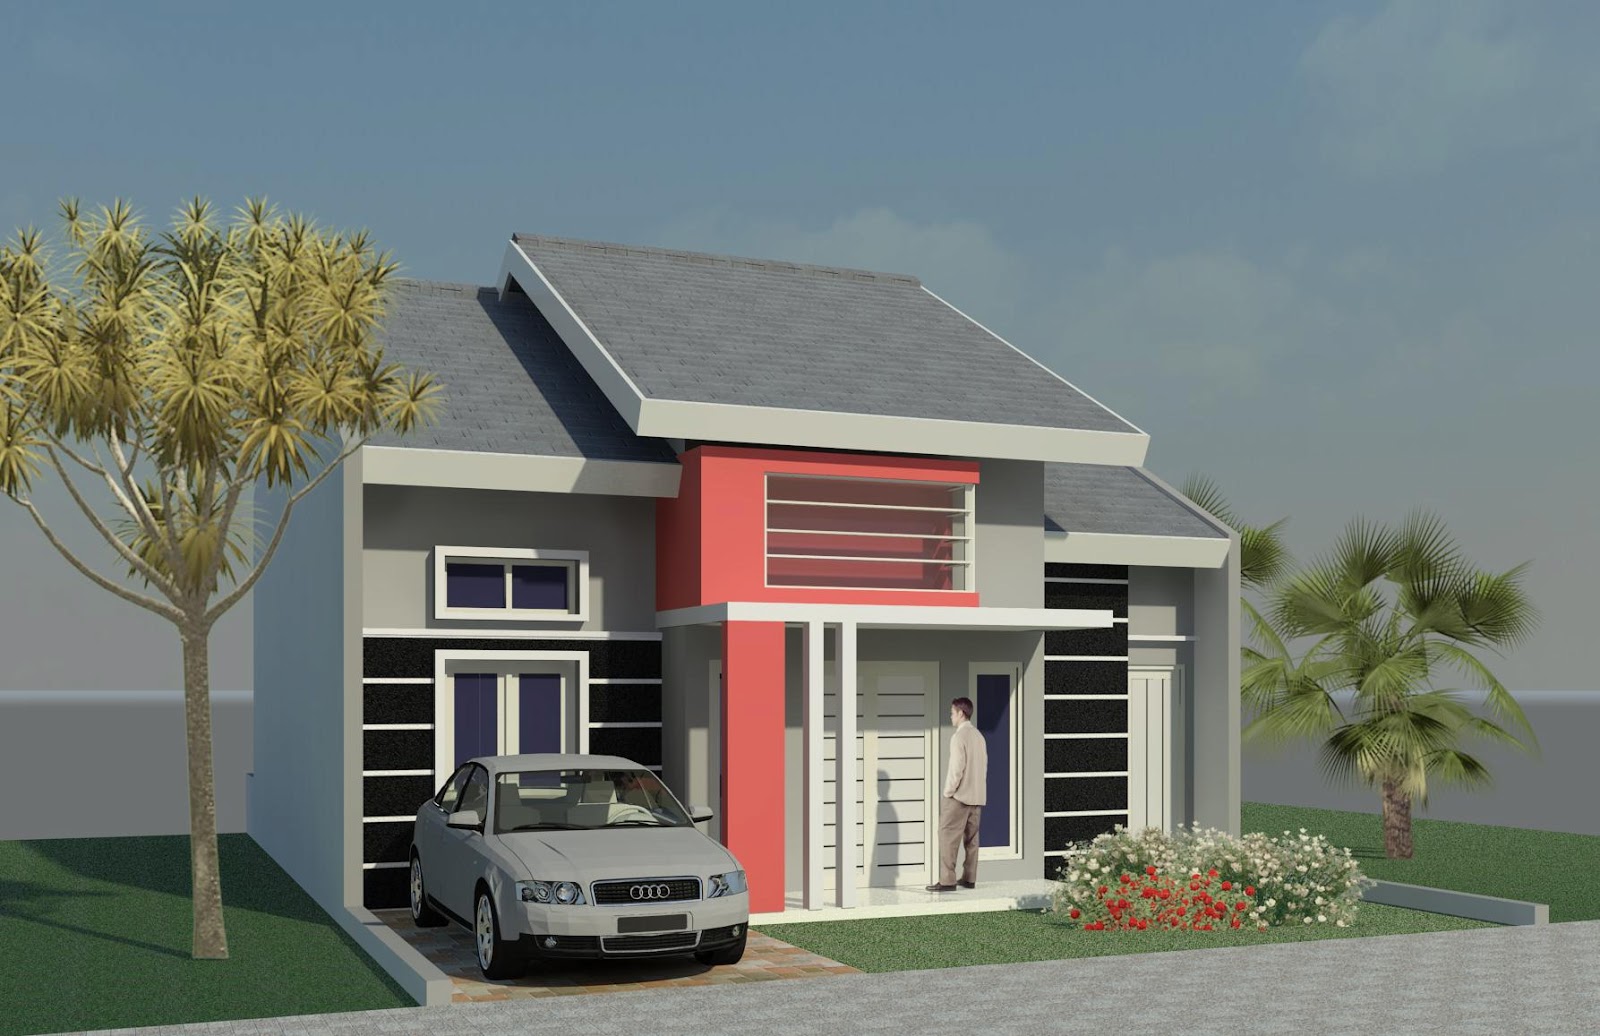 Desain Rumah Minimalis 1 Lantai Sederhana Terbaru 2016